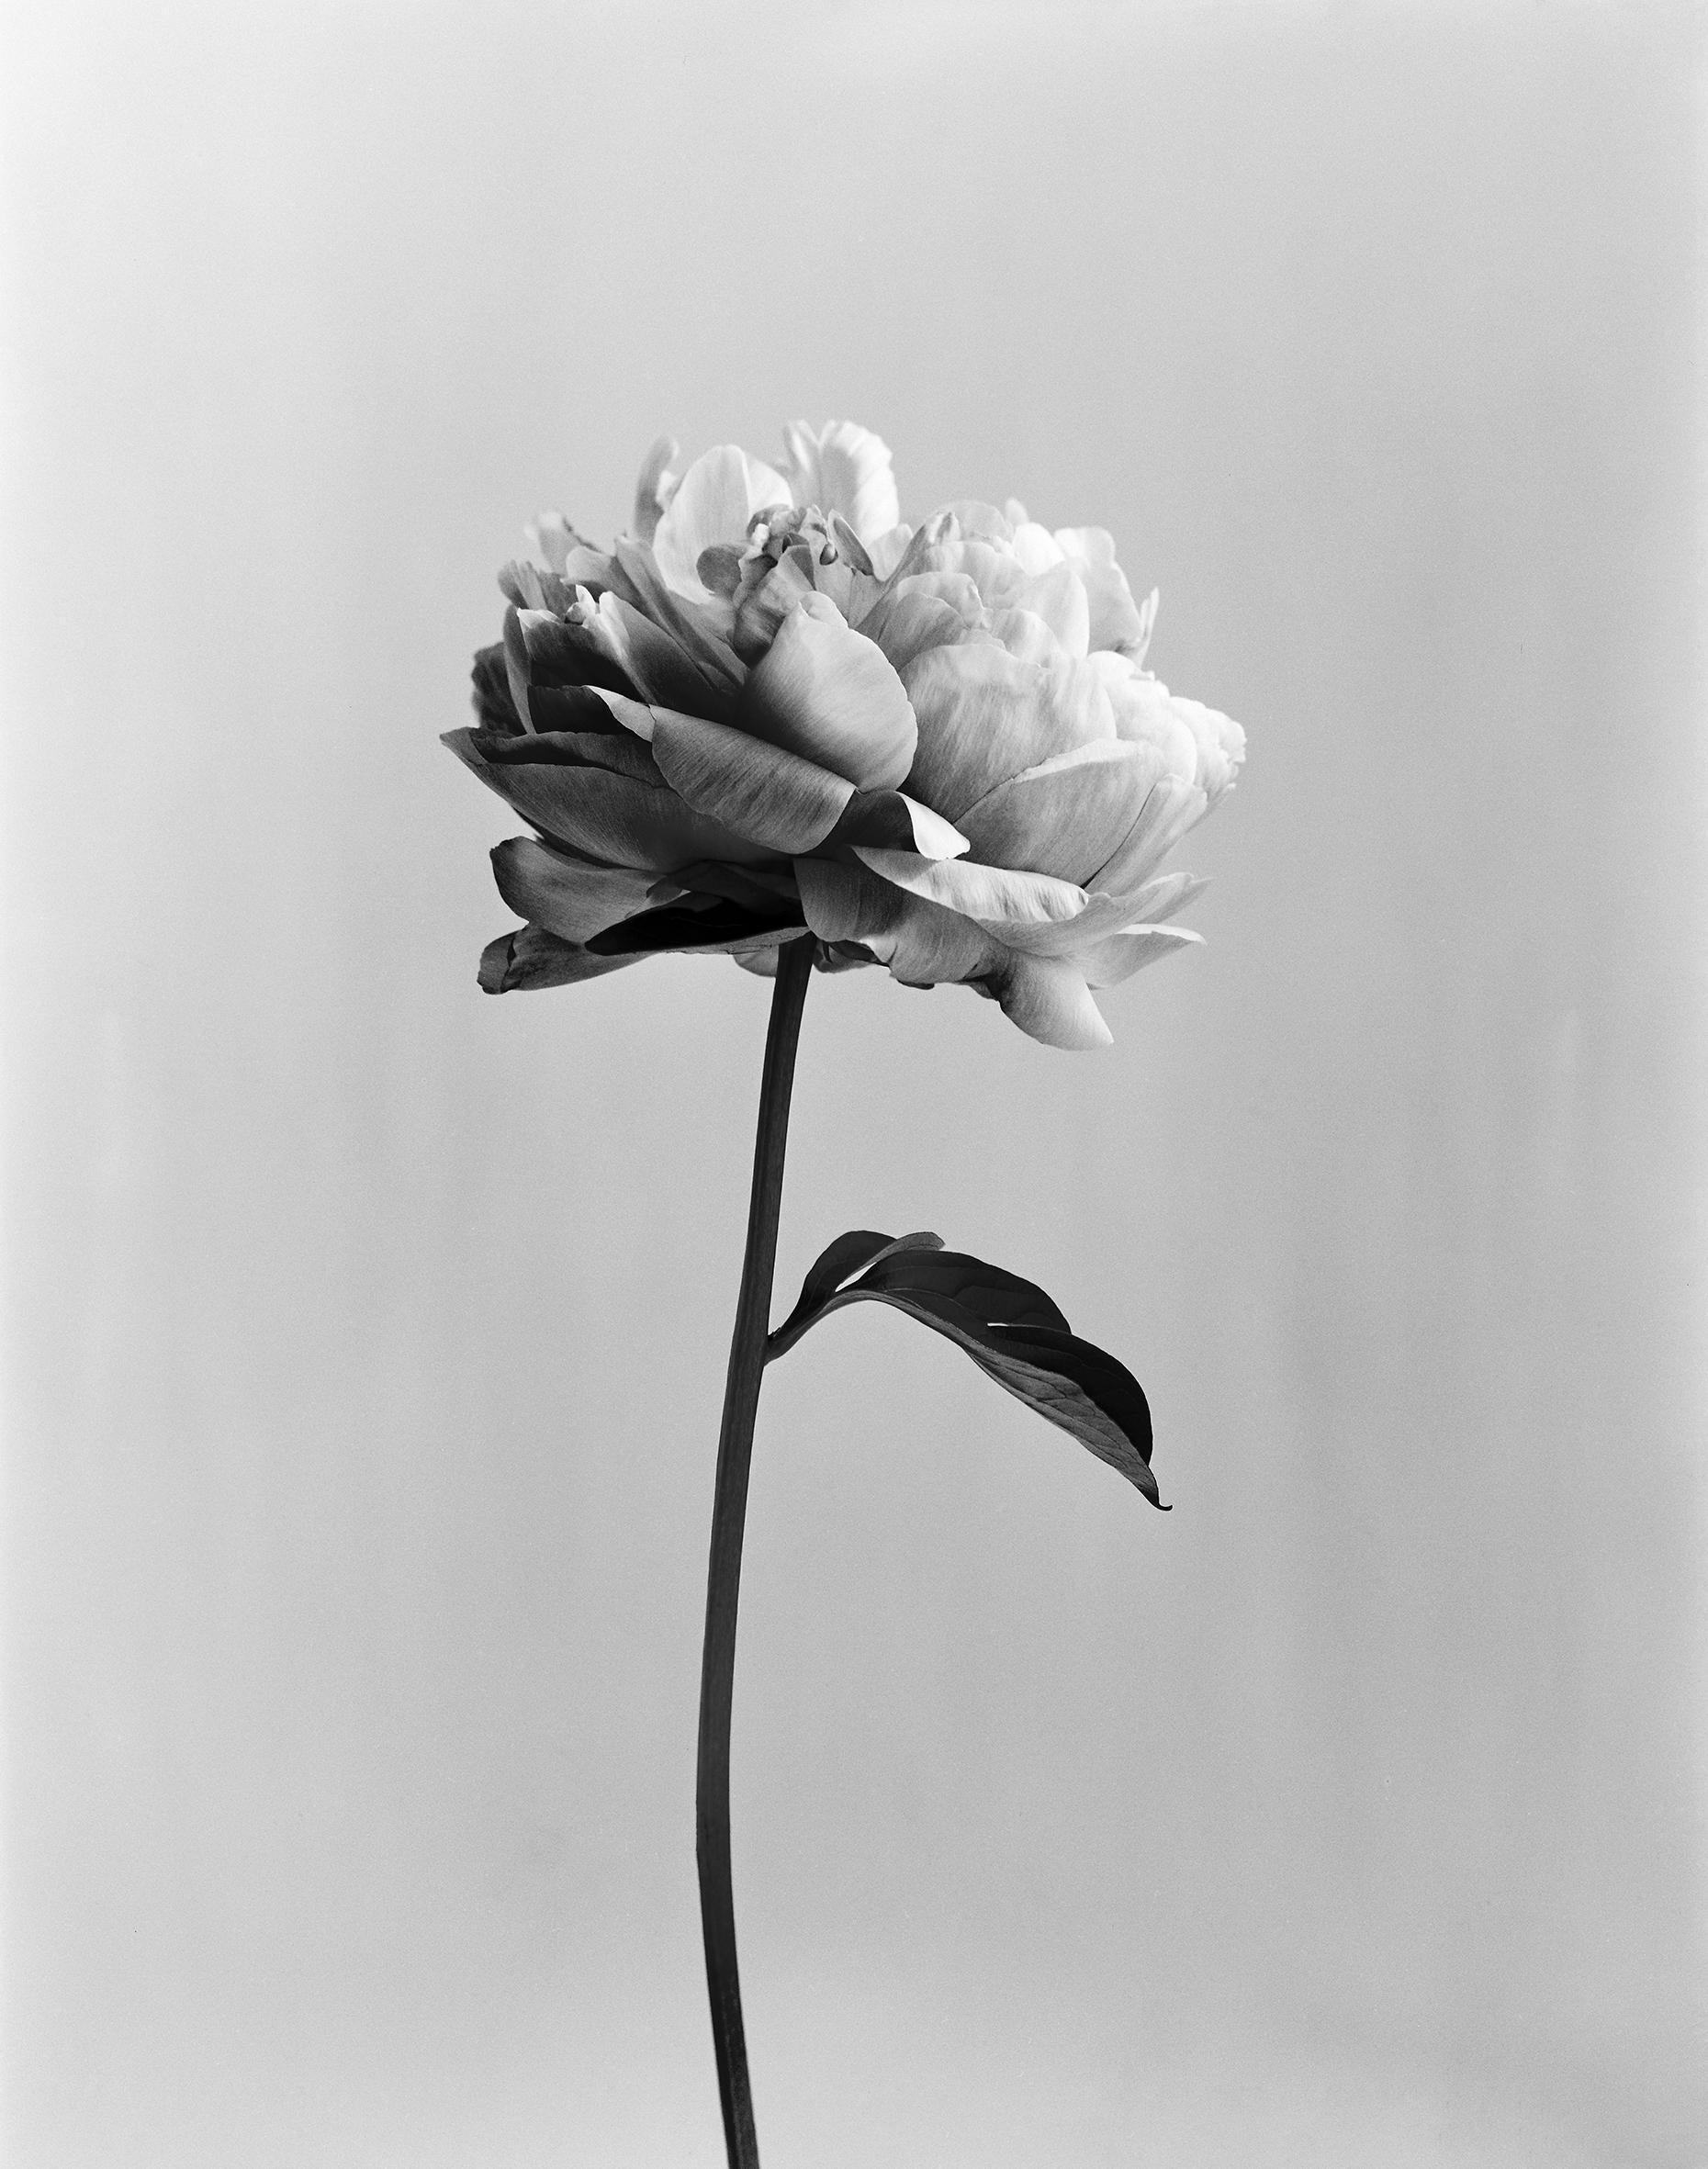 Ugne Pouwell Still-Life Photograph – Peony no.3 – analoge Schwarz-Weiß-Blumenfotografie, limitierte Auflage von 15 Stück